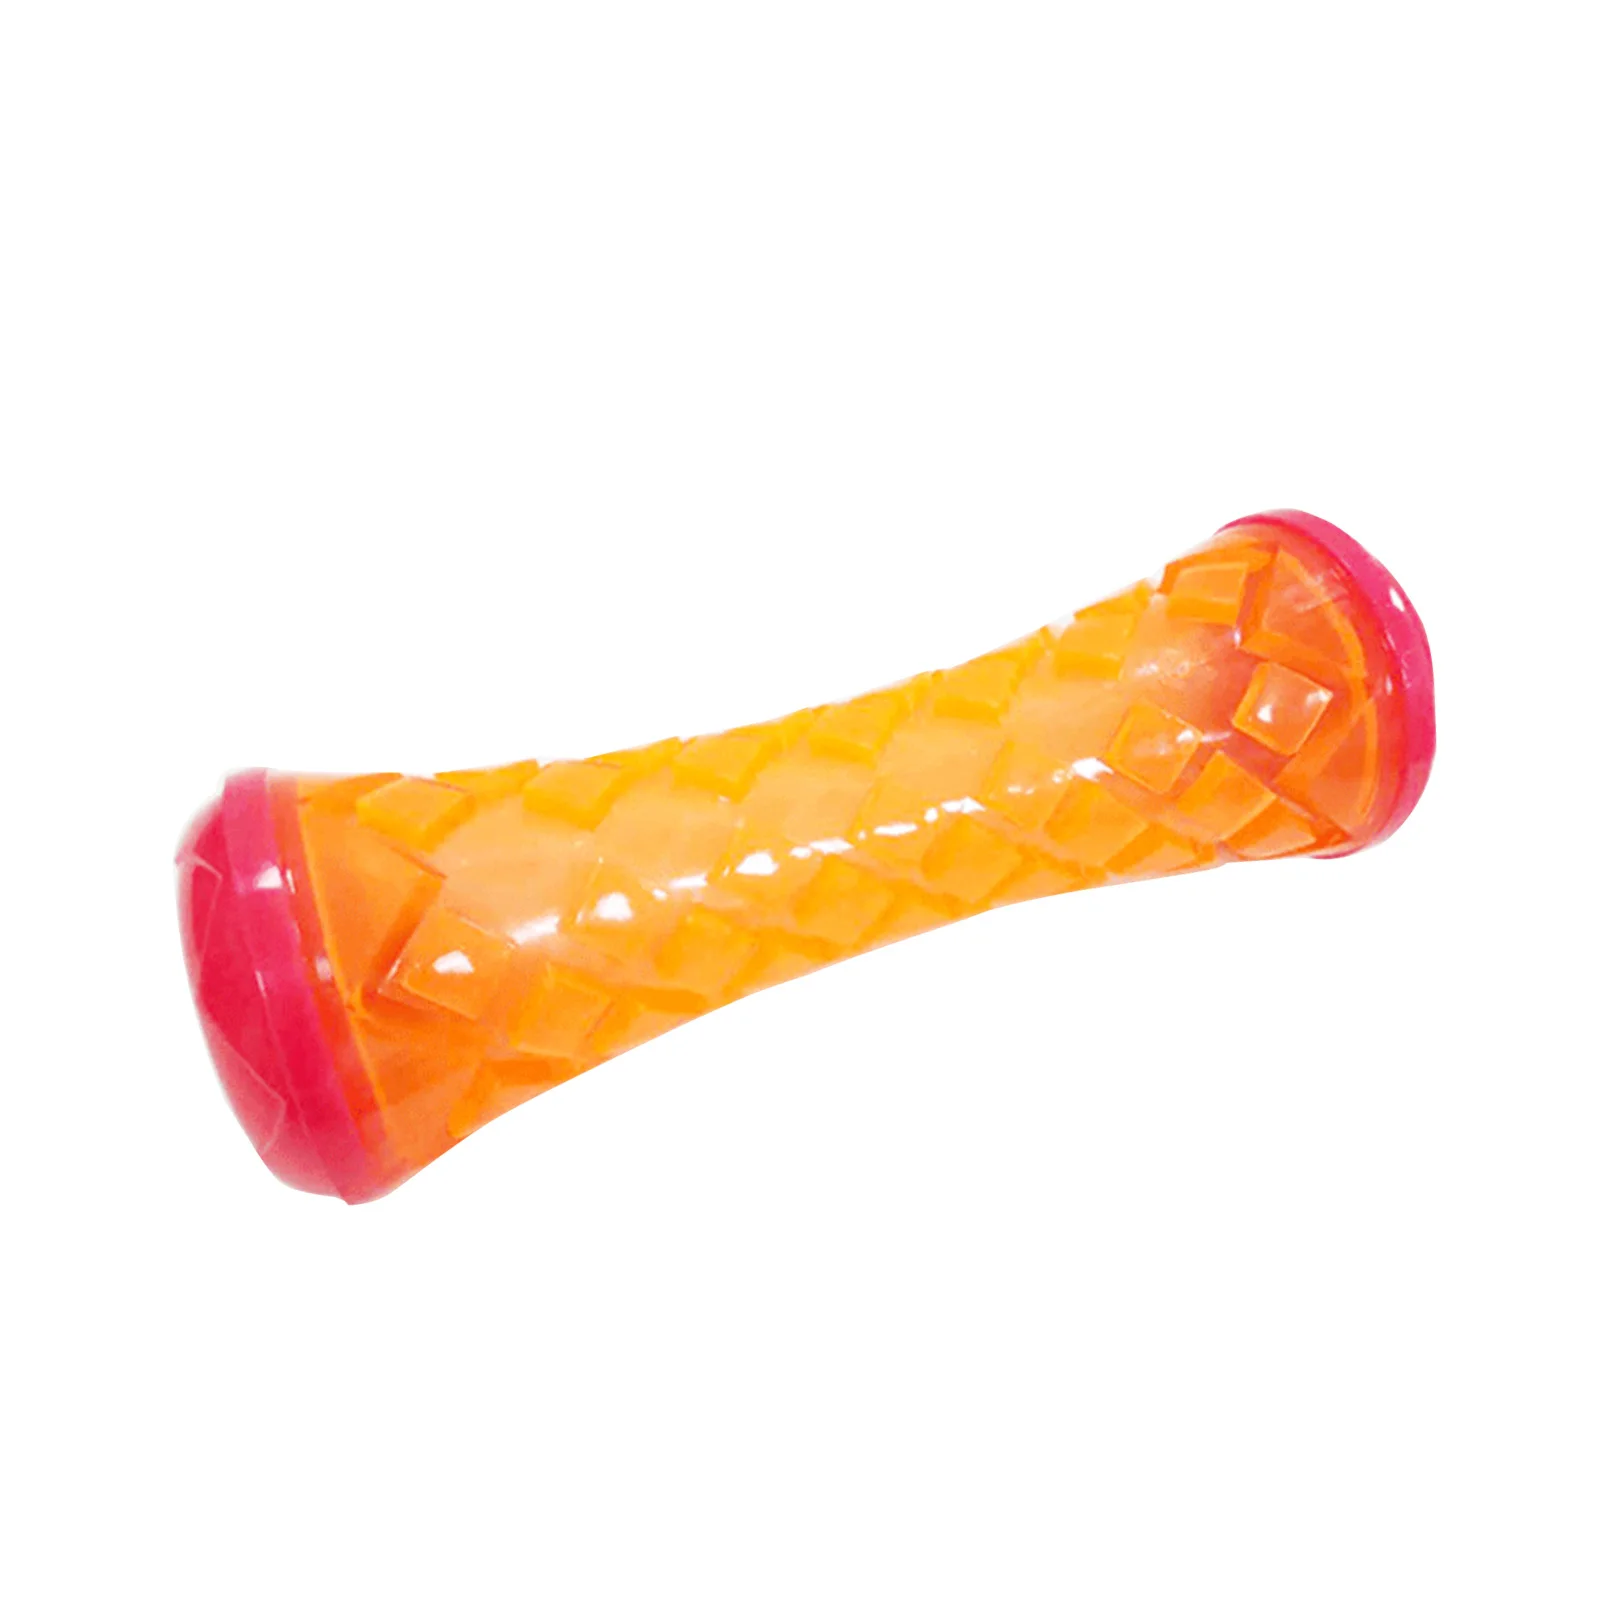 

Зубная палочка Molar из термопластичной резины, забавная Интерактивная жевательная игрушка для собак, устойчивая к укусам, жевательная игруш...